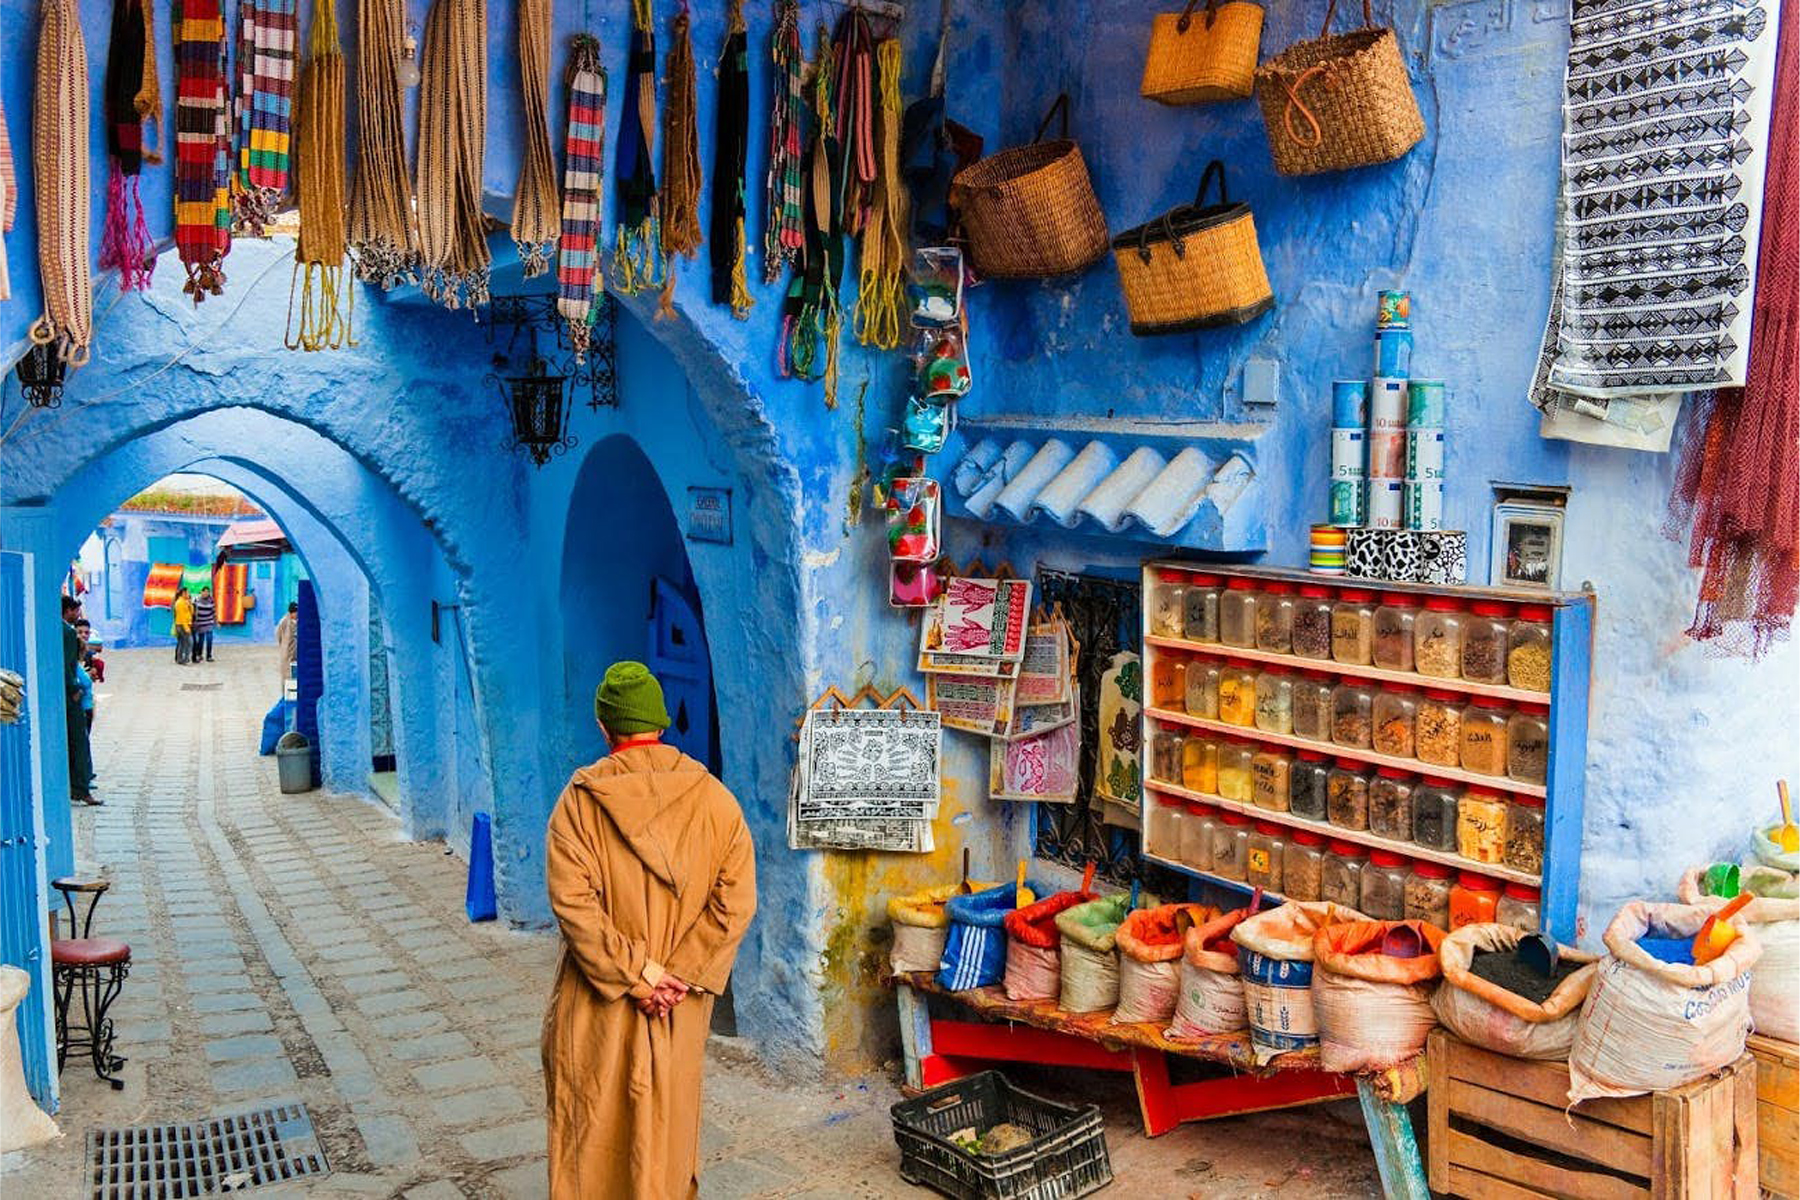 السياحة المغربية والتونسية تأمل في التعافي مع تراجع الوباء